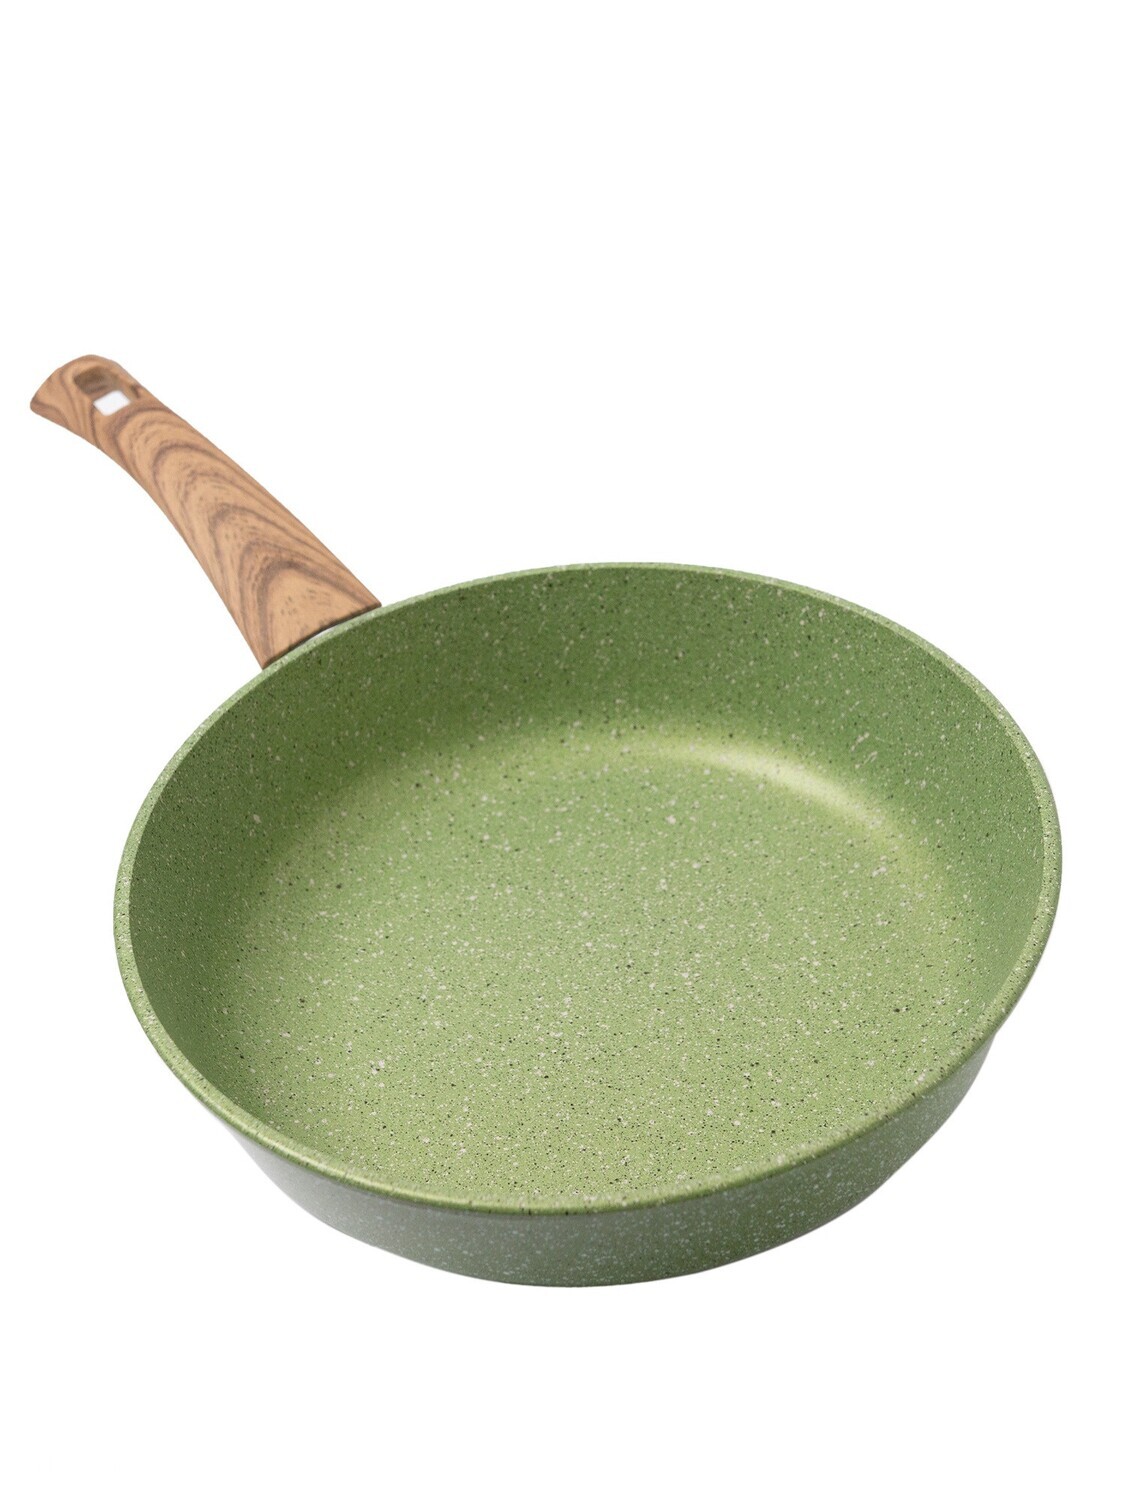 Сковорода литая Сила природы с антипригарным покрытием, зеленая 22 см